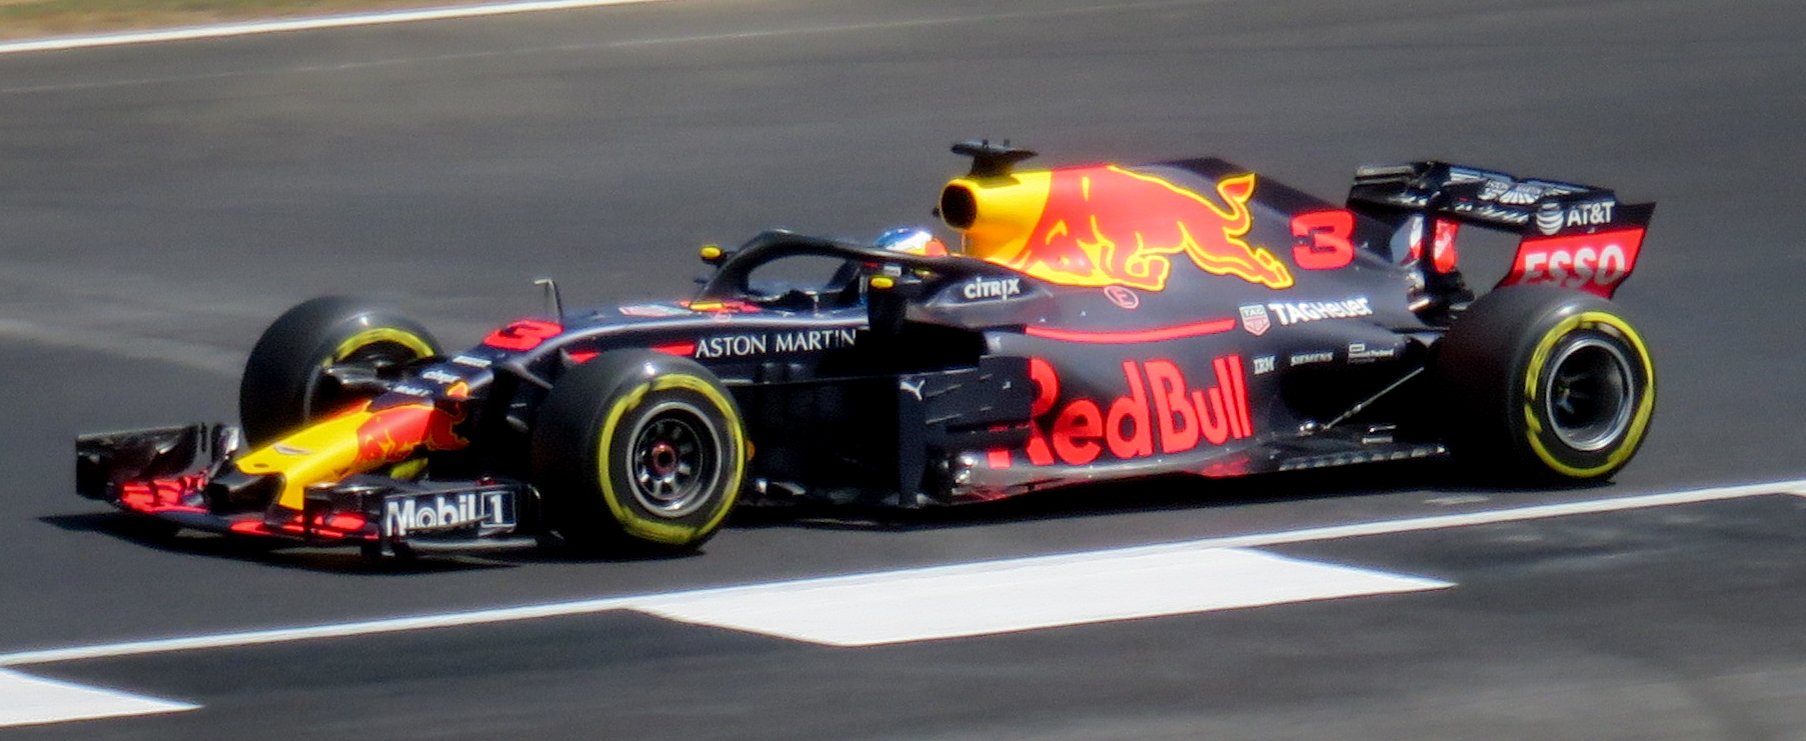 Daniel_Ricciardo,_Red_Bull_Racing_F1_Team Jen Ross via Wikimedia.